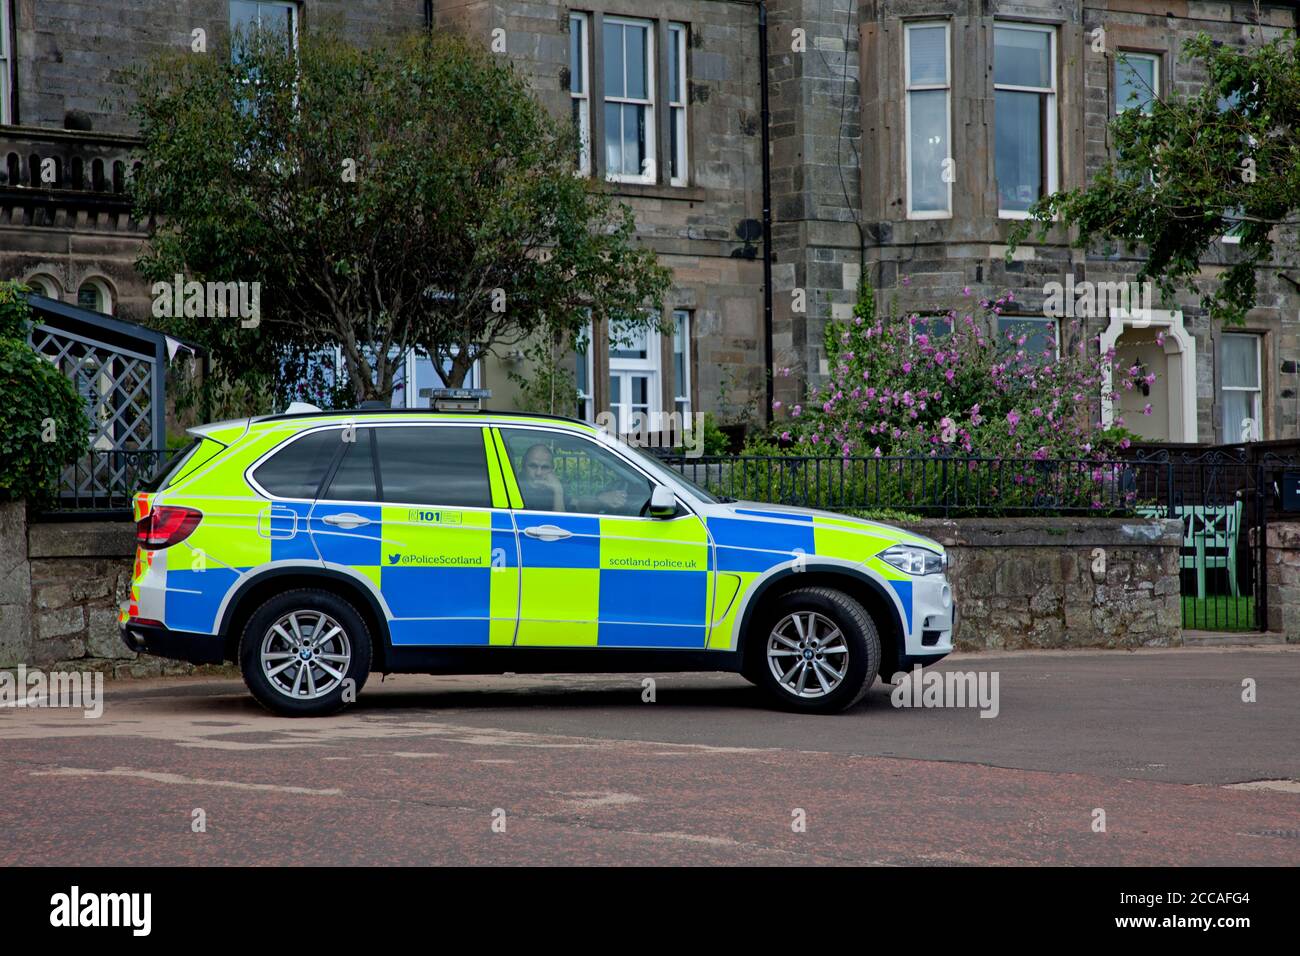 Portobello, Édimbourg, Écosse, Royaume-Uni. 20 août 2020. La police effectue toujours des patrouilles de routine sur la promenade. Banque D'Images